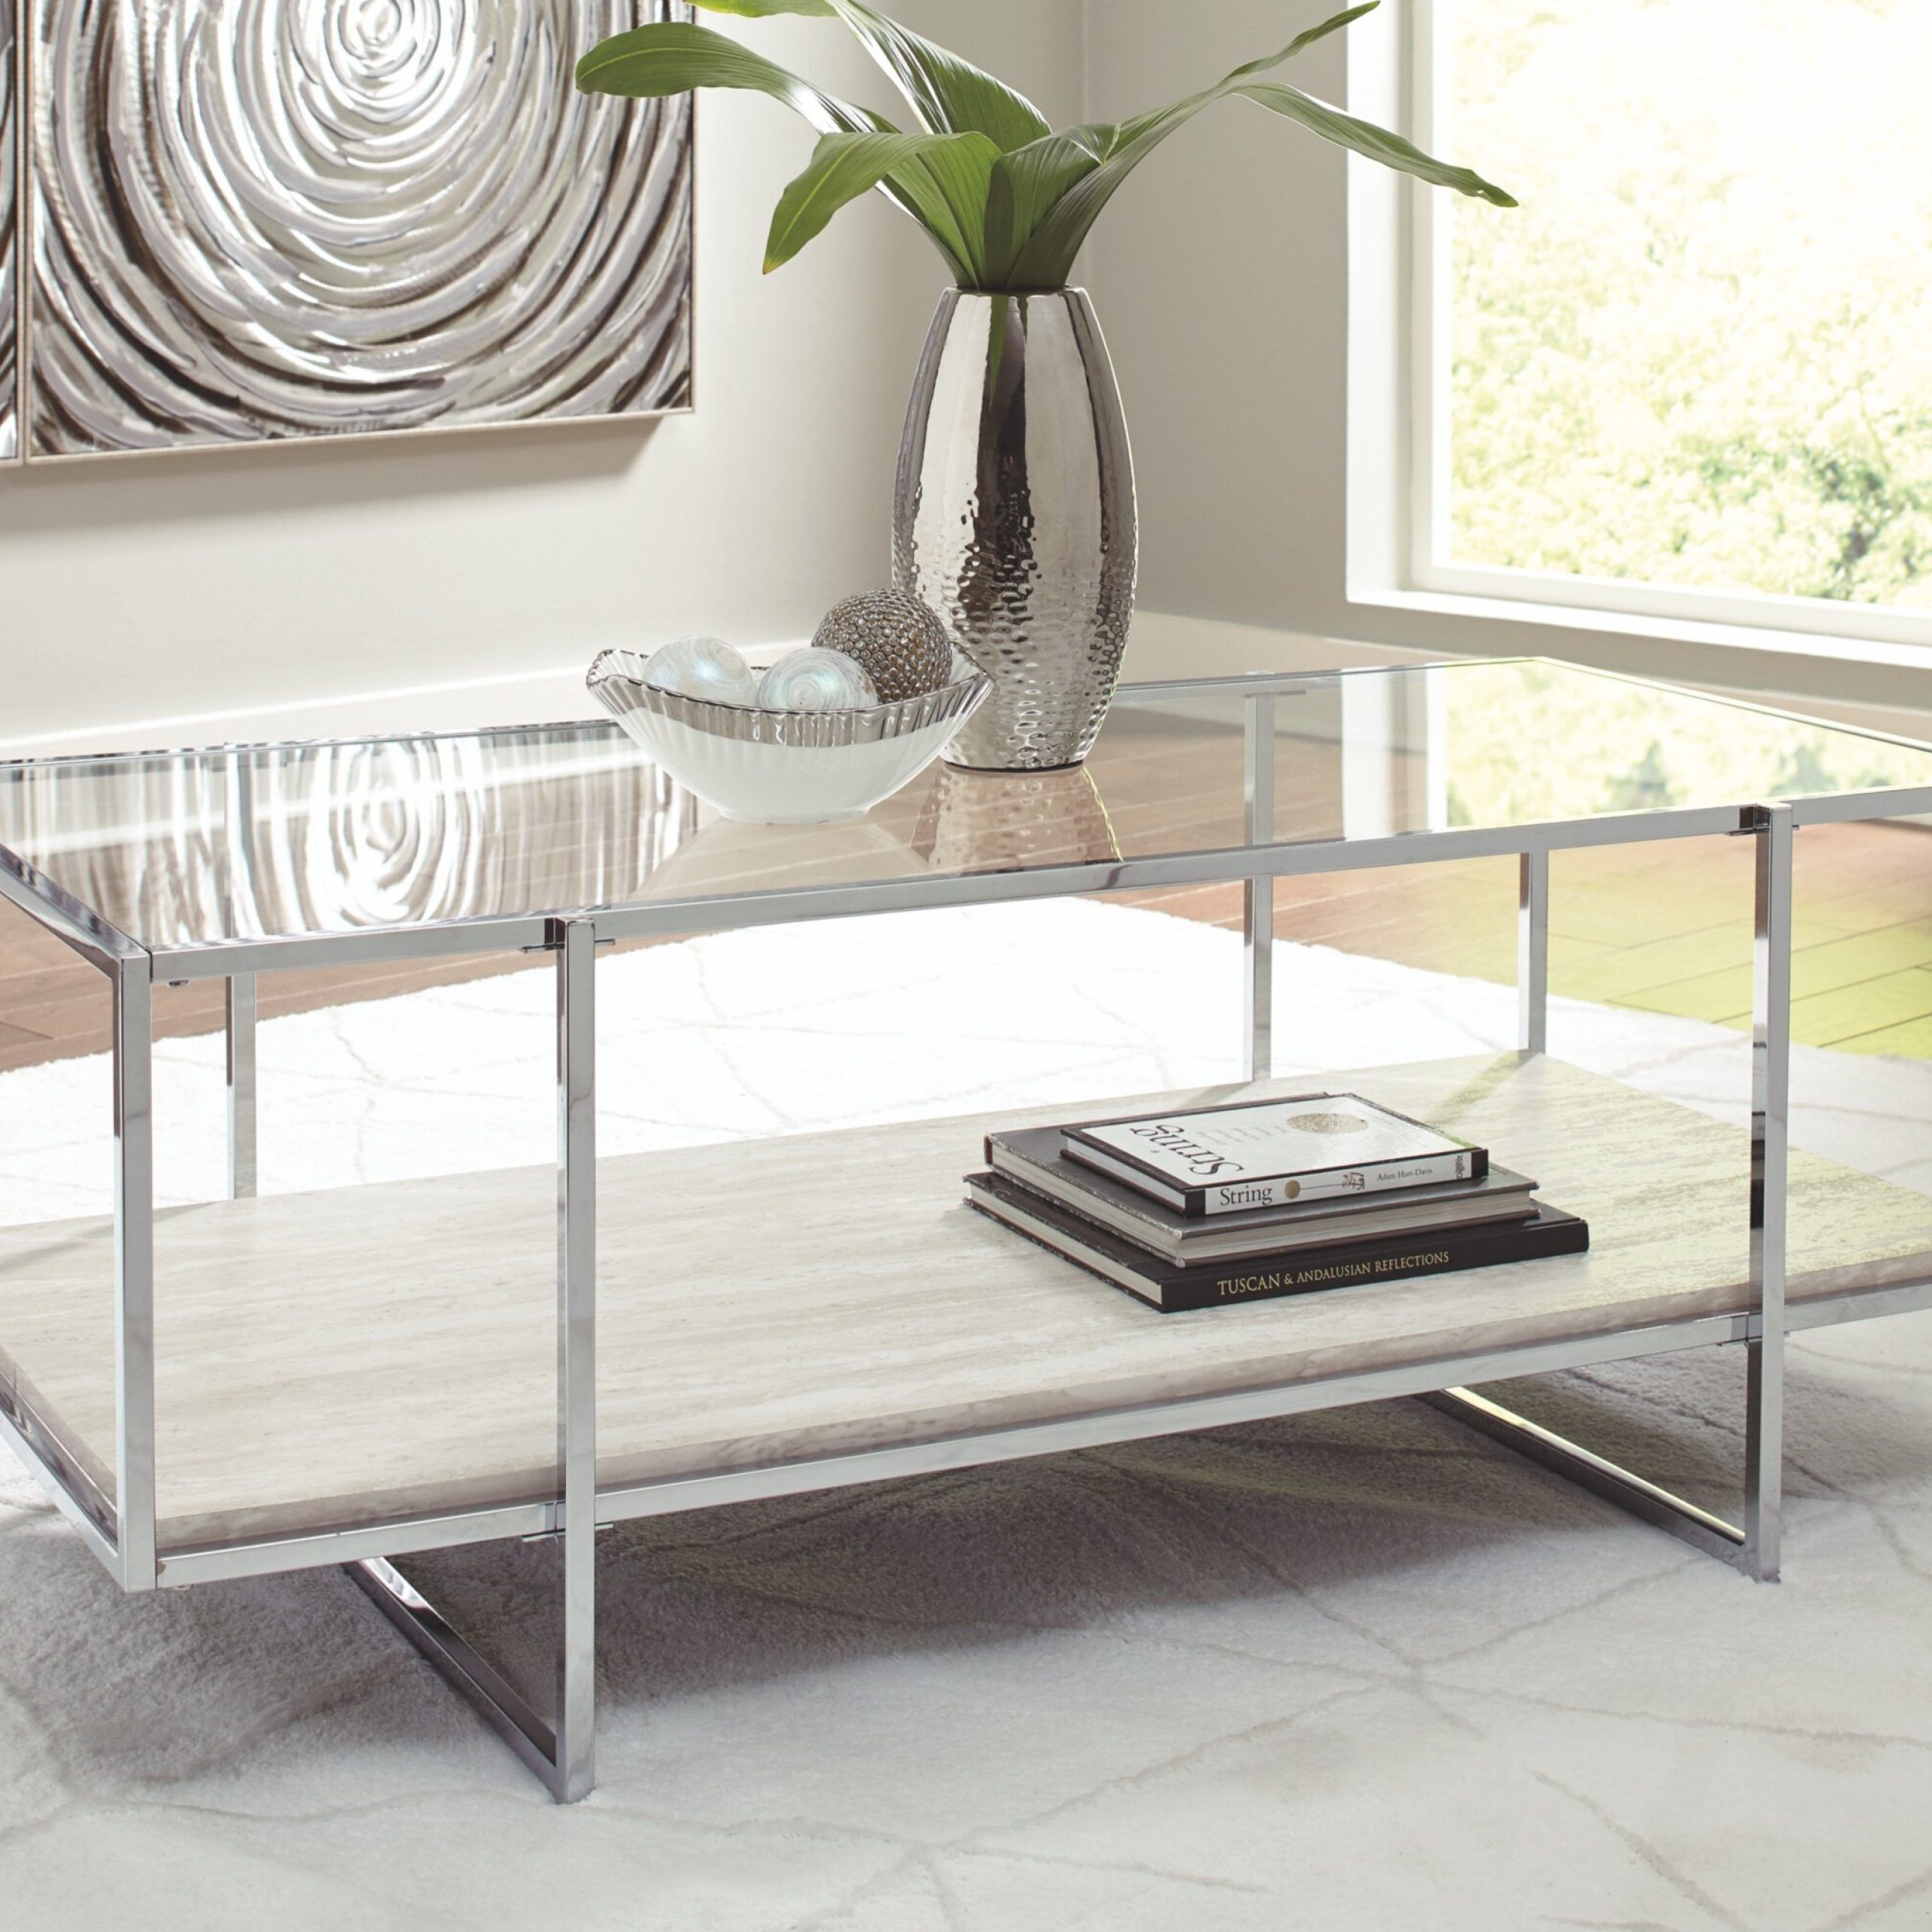 Ebern Designs Hyattsville Floor Shelf Coffee Table With Storage & Reviews |  Wayfair Throughout Glass Coffee Tables With Storage Shelf (View 2 of 20)